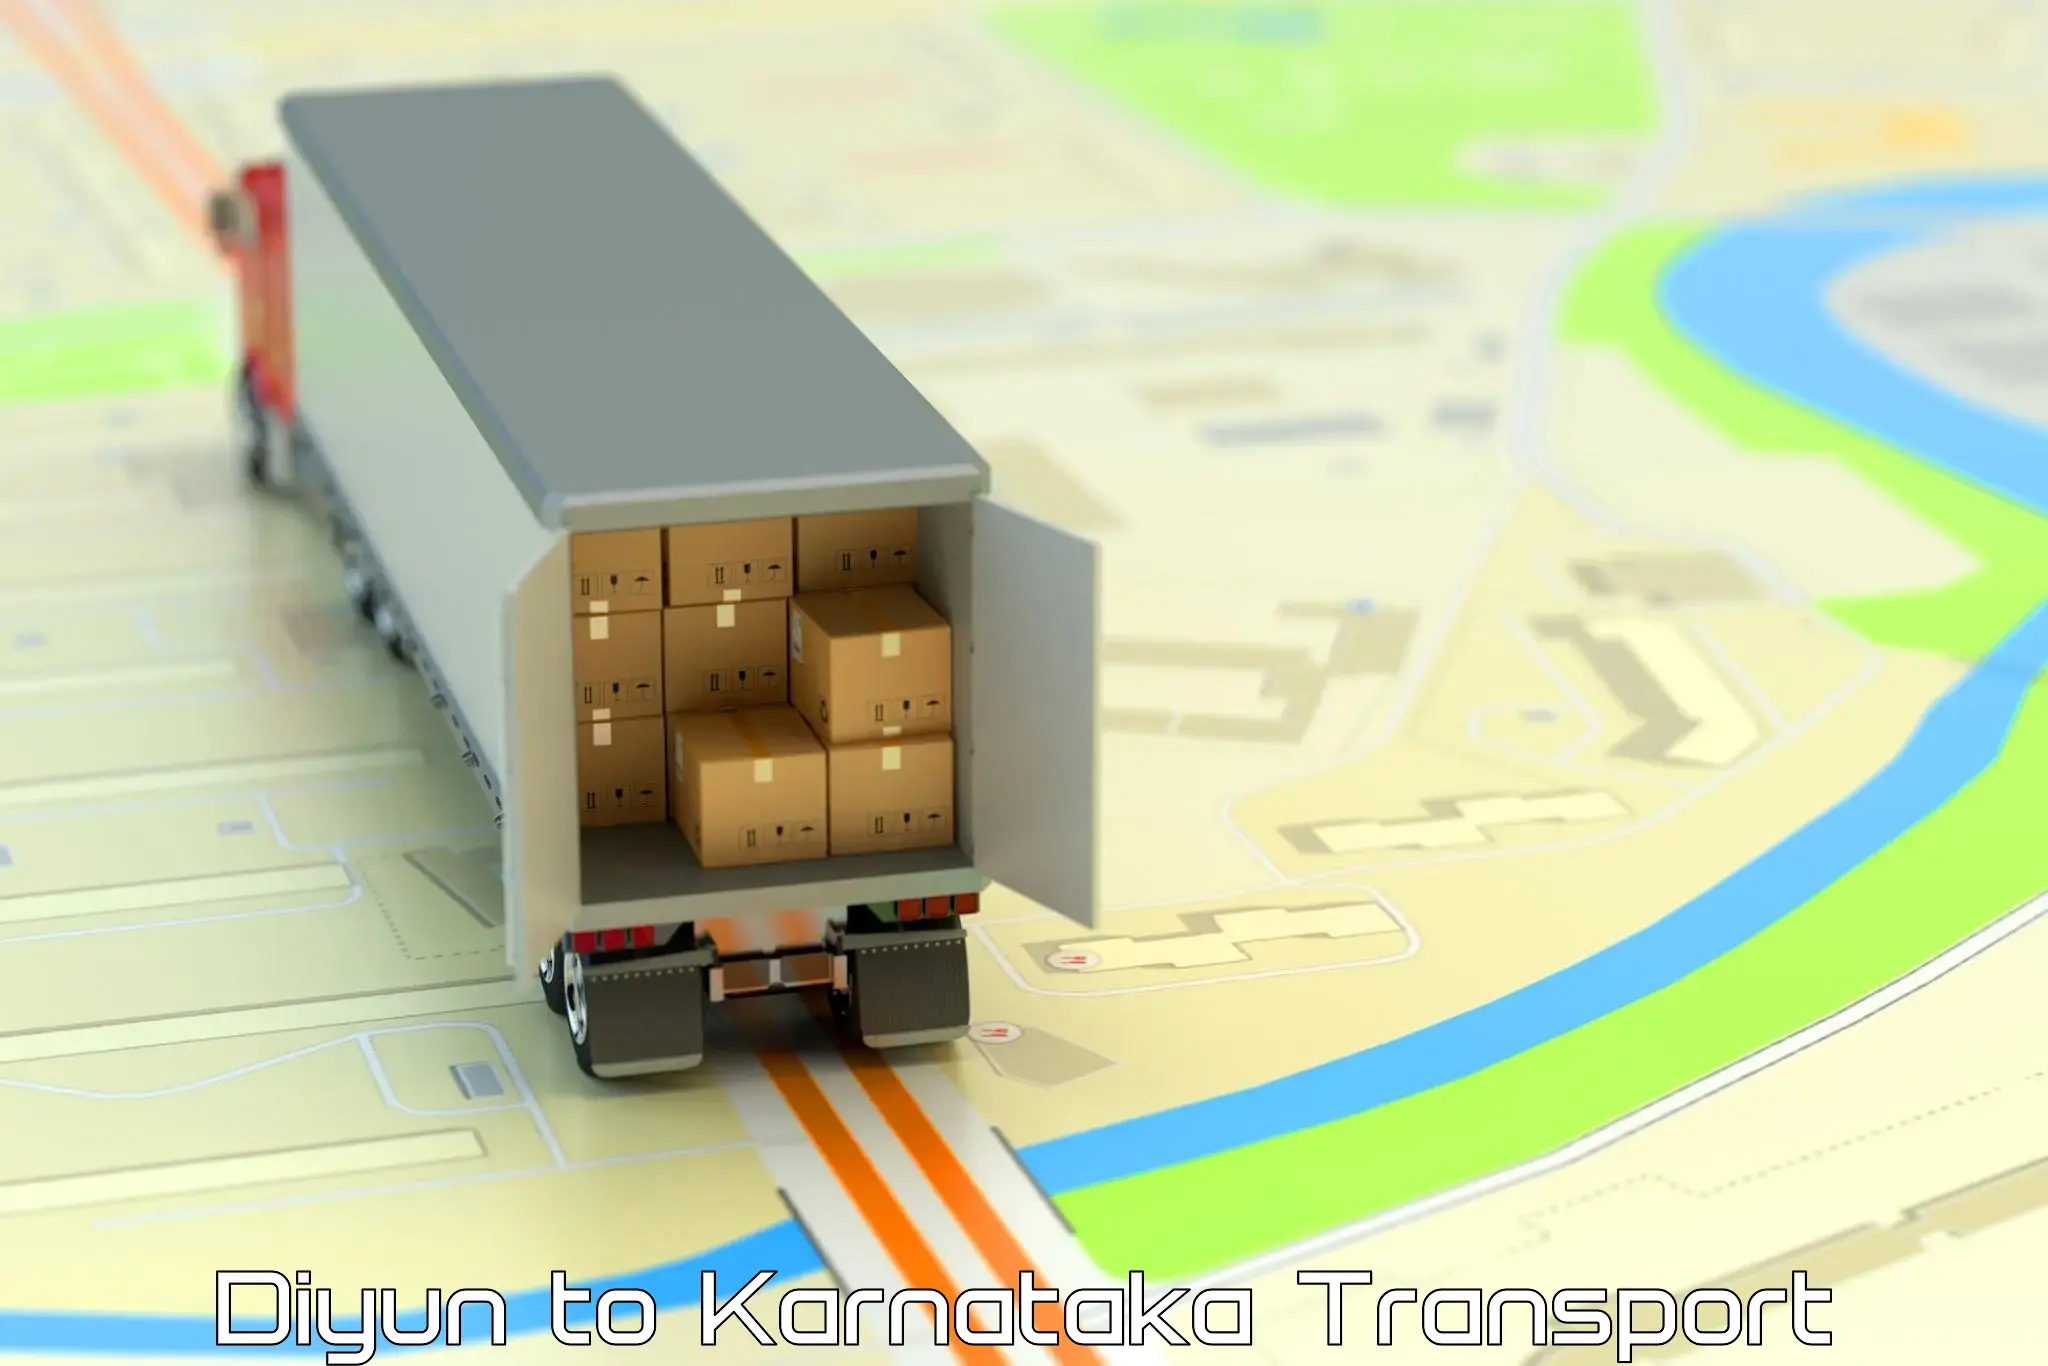 Container transport service Diyun to Kerur